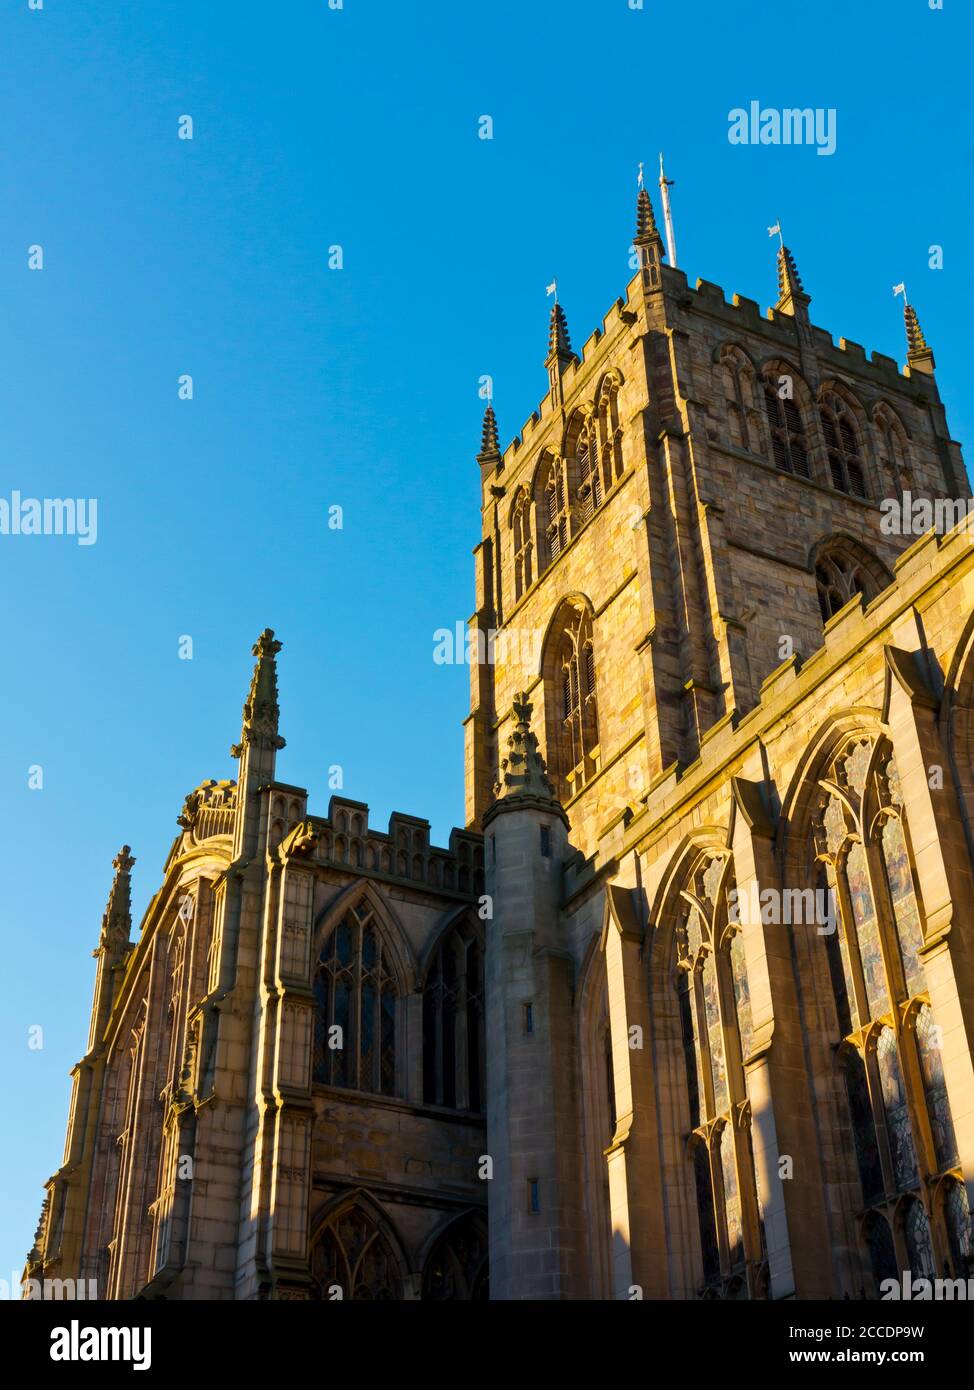 L'église médiévale de Sainte-Marie-la-Vierge dans le Lace Market zone du centre-ville de Nottingham Angleterre Royaume-Uni Banque D'Images